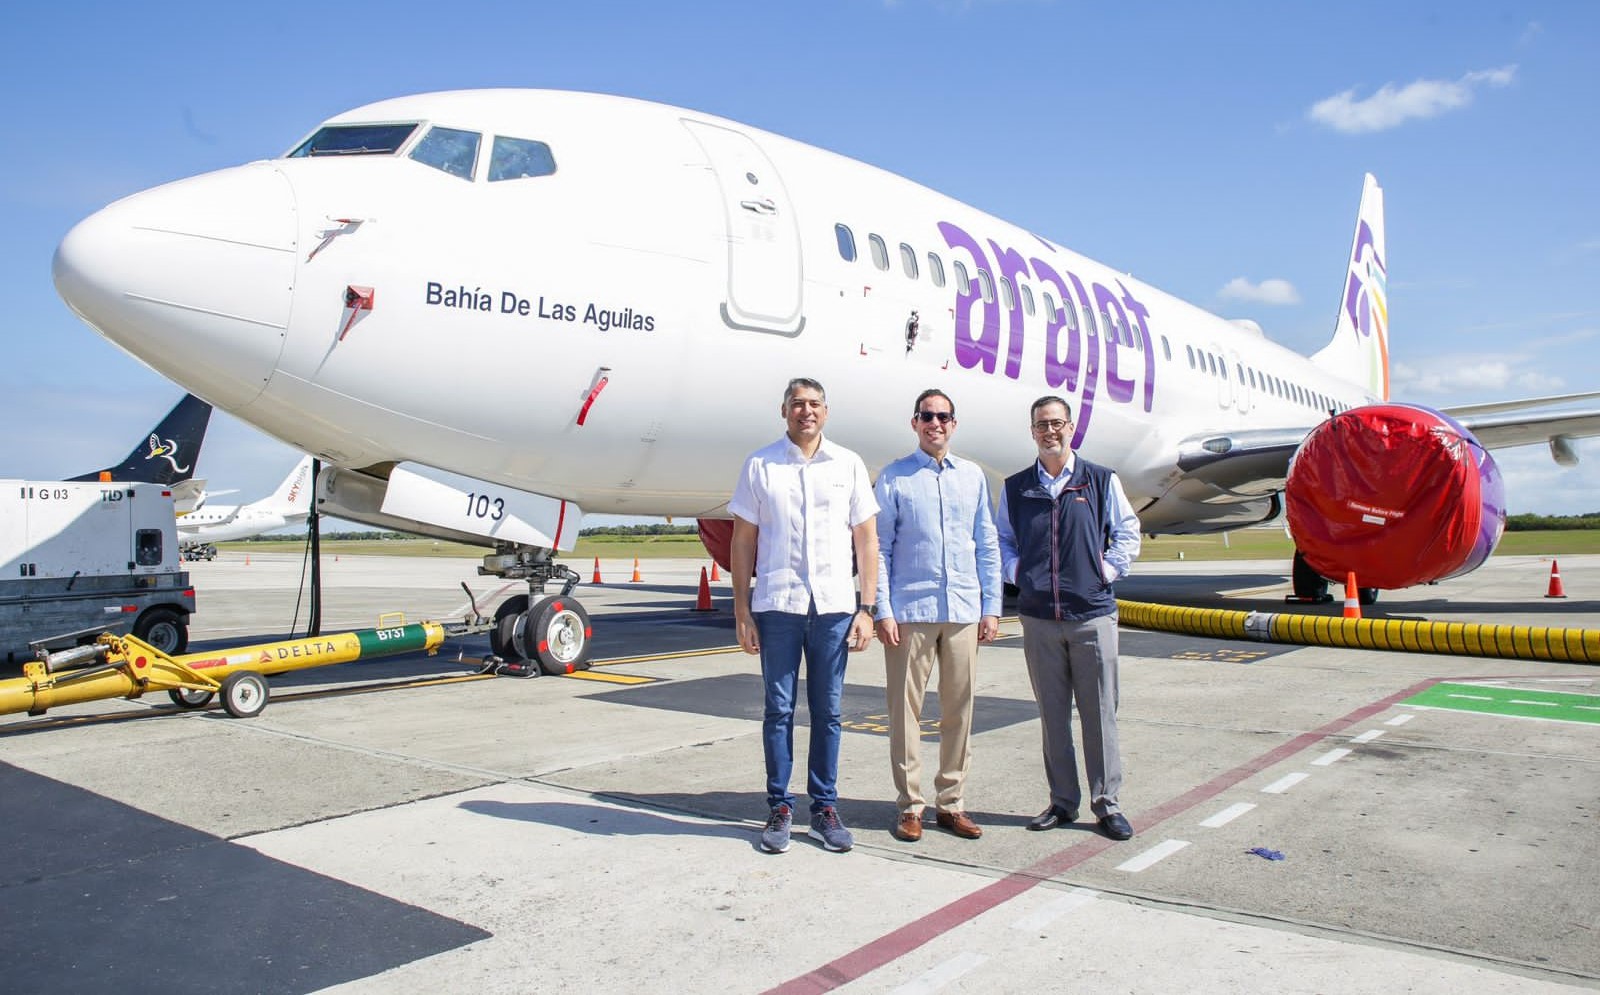 Aerolínea Arajet recibe novena aeronave «Bahía de las águilas»